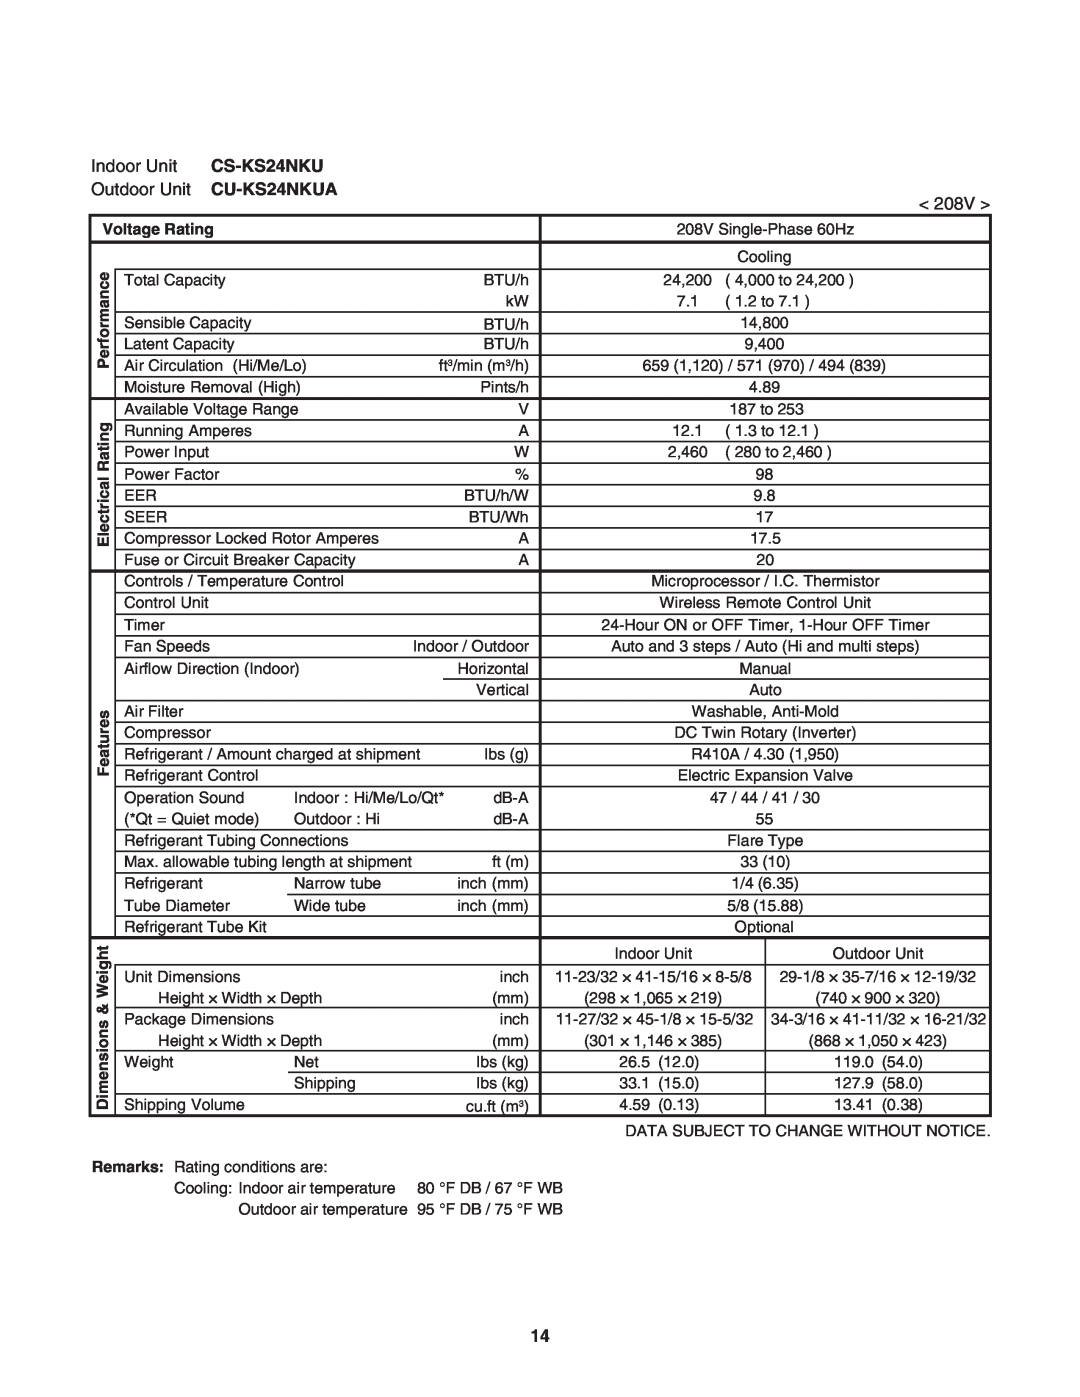 Panasonic CU-KS24NKUA service manual Indoor Unit, CS-KS24NKU, Outdoor Unit, < 208V >, Voltage Rating, ical, Electr 